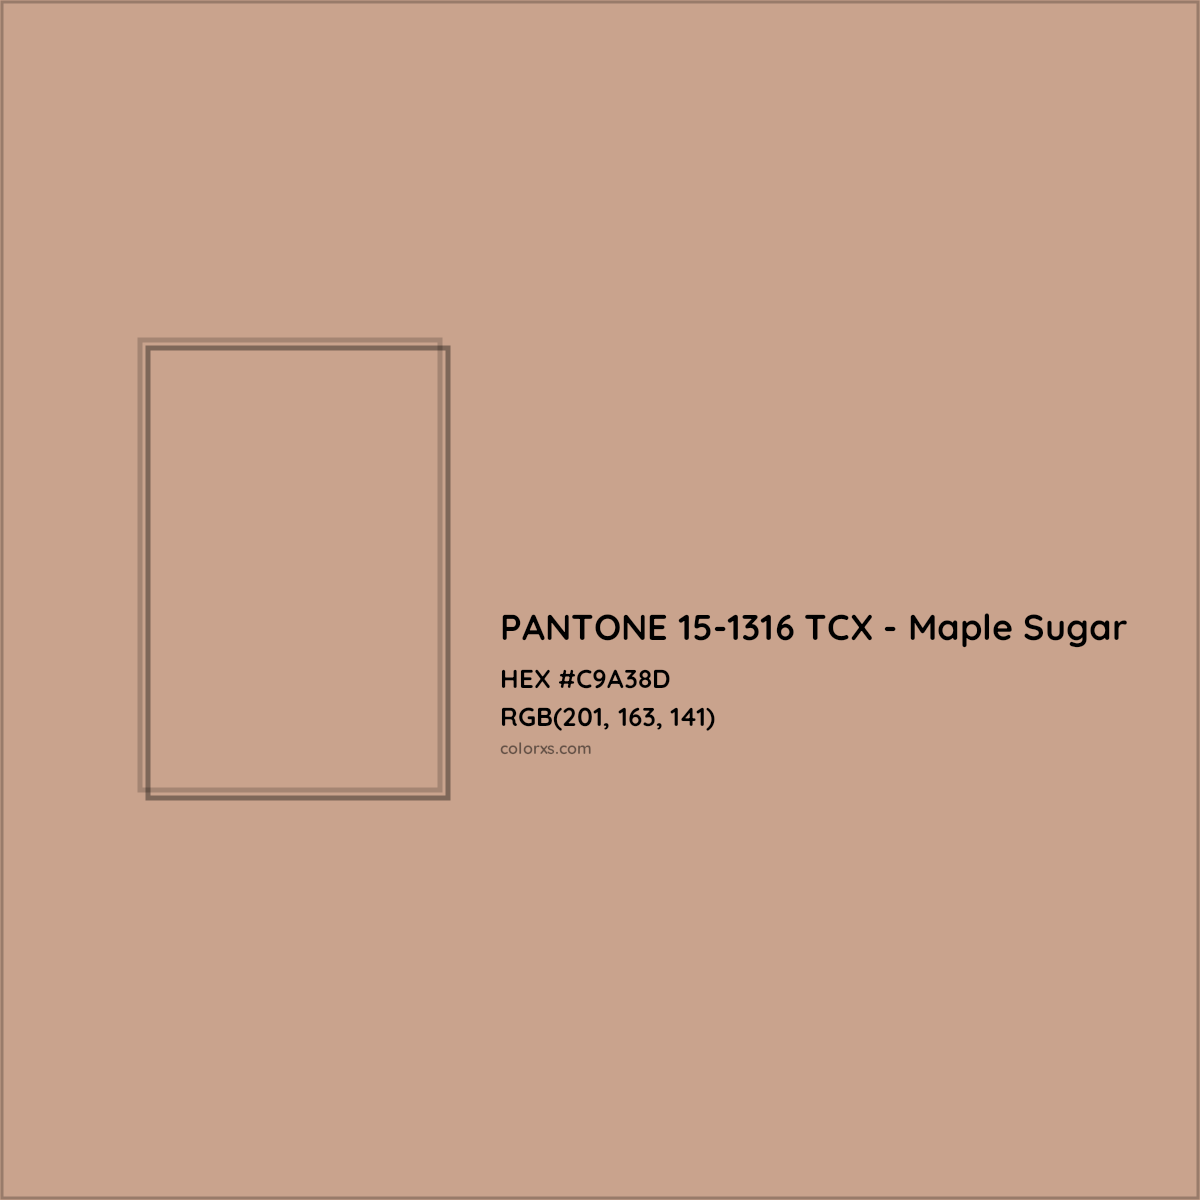 HEX #C9A38D PANTONE 15-1316 TCX - Maple Sugar CMS Pantone TCX - Color Code